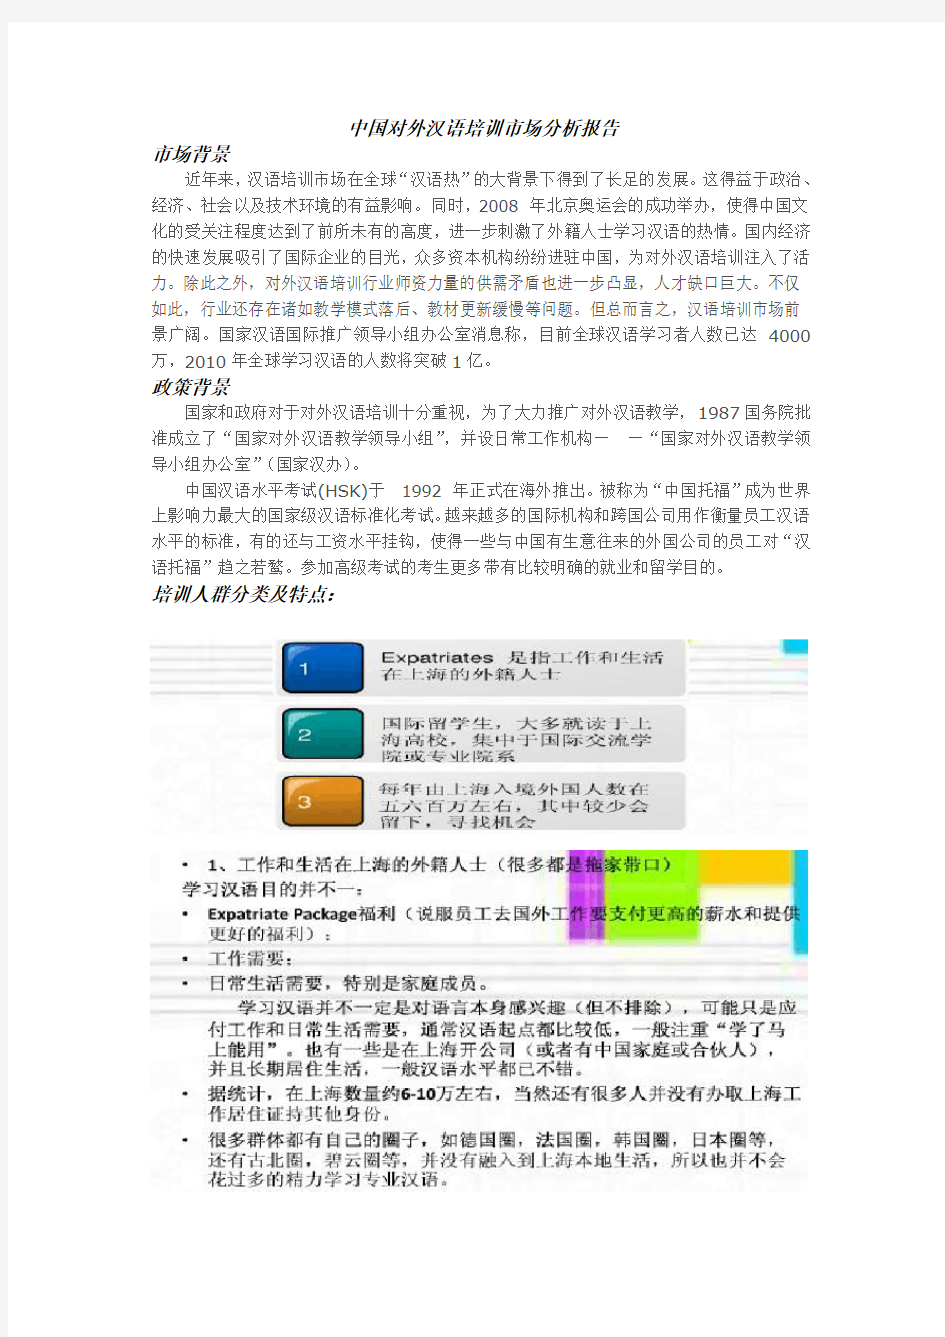 对外汉语教学市场分析报告(整合版)模板